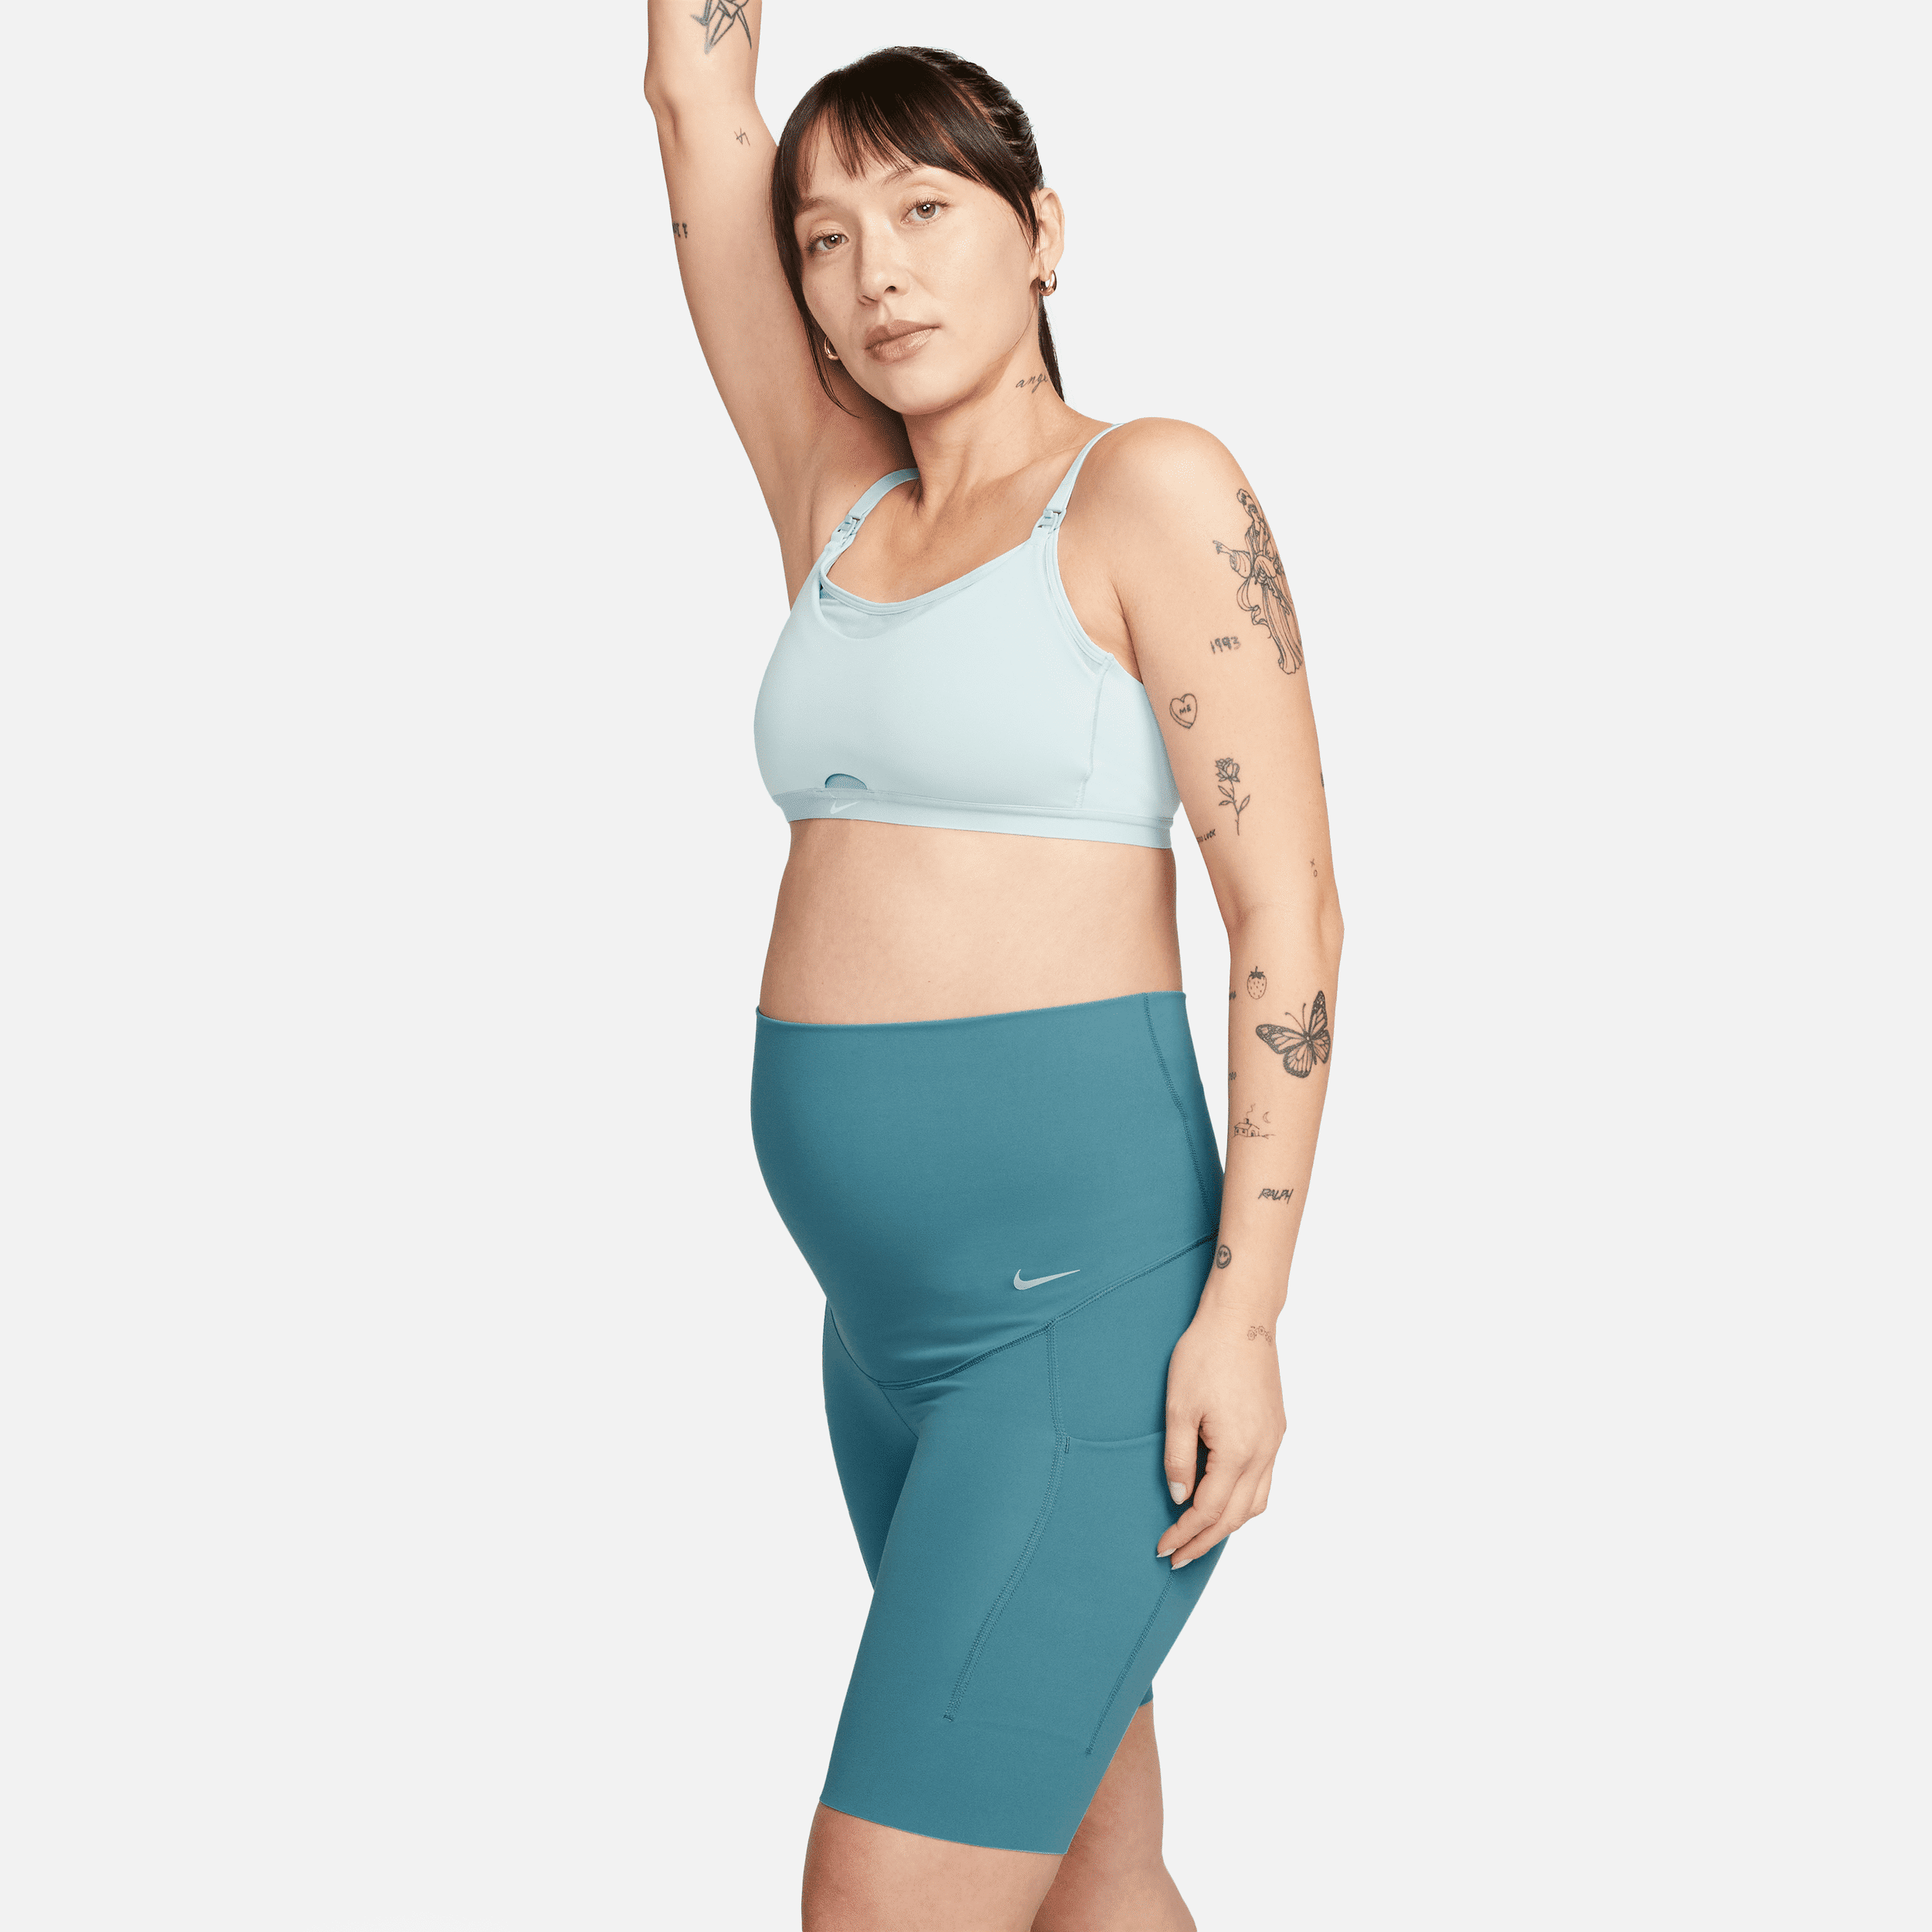 nike shorts modello ciclista 21 cm a vita alta e sostegno leggero con tasche  zenvy (m) – donna (maternità) - blu